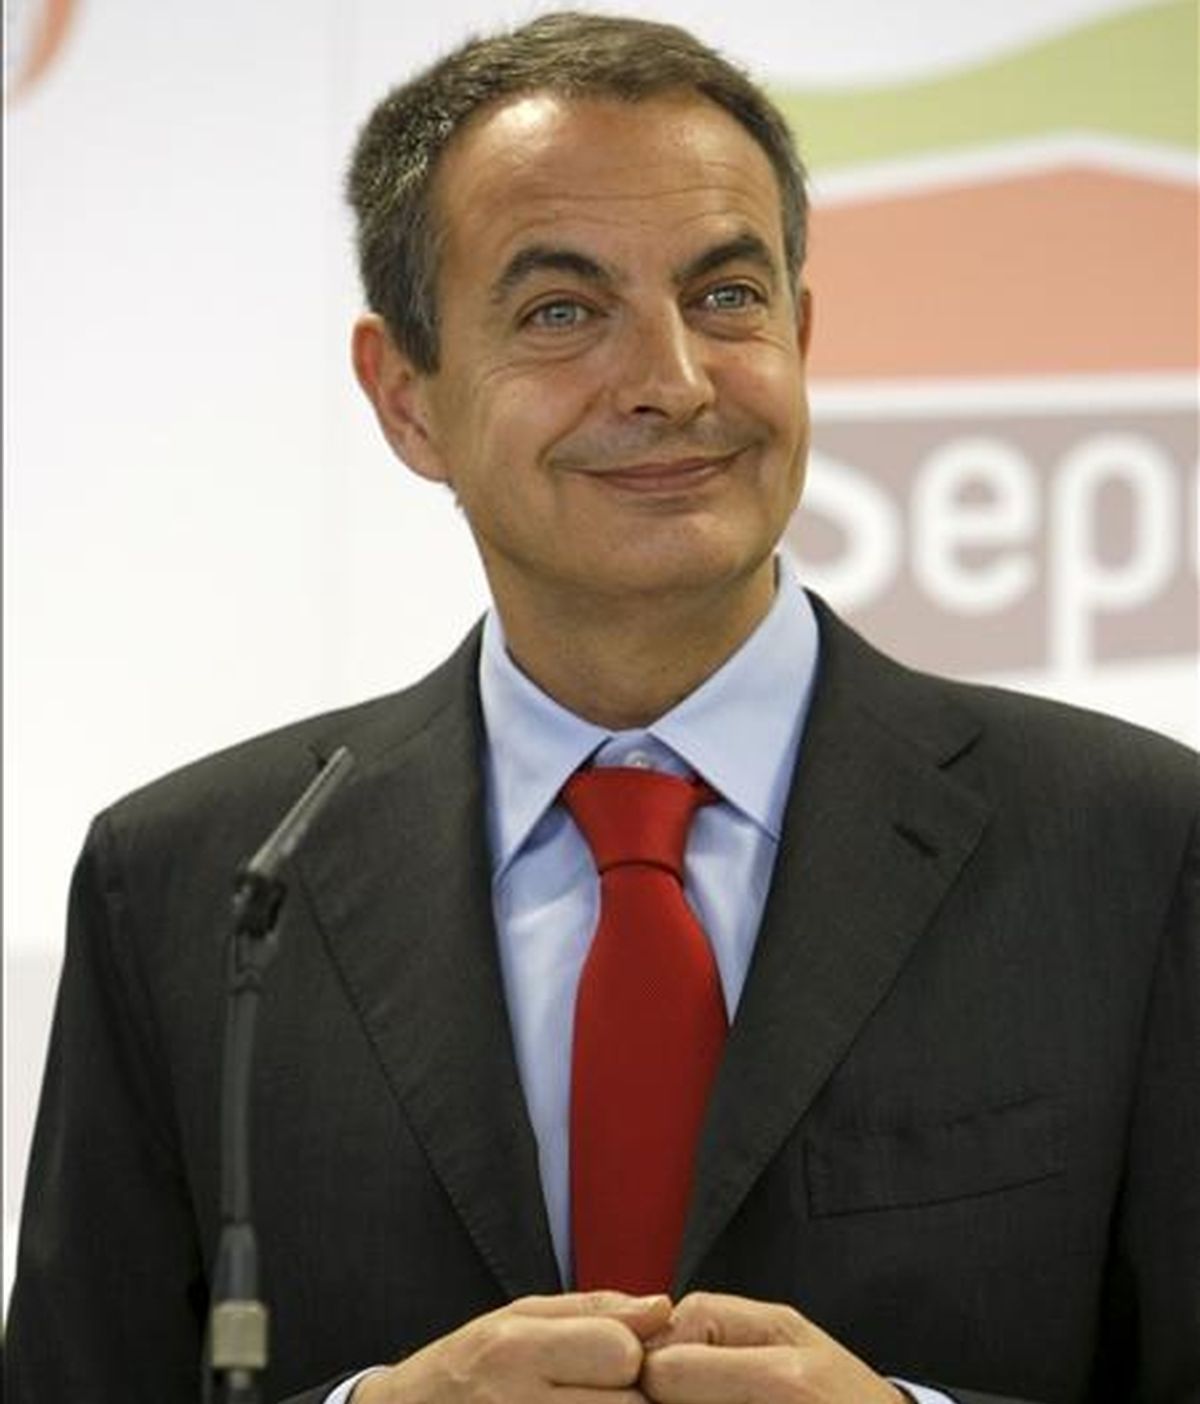 El presidente del Gobierno, José Luis Rodríguez Zapatero, durante la conferencia de prensa que ofreció hoy antes de visitar la sede de la Entidad Pública Empresarial de Suelo (SEPES), con motivo de su 50 aniversario. EFE